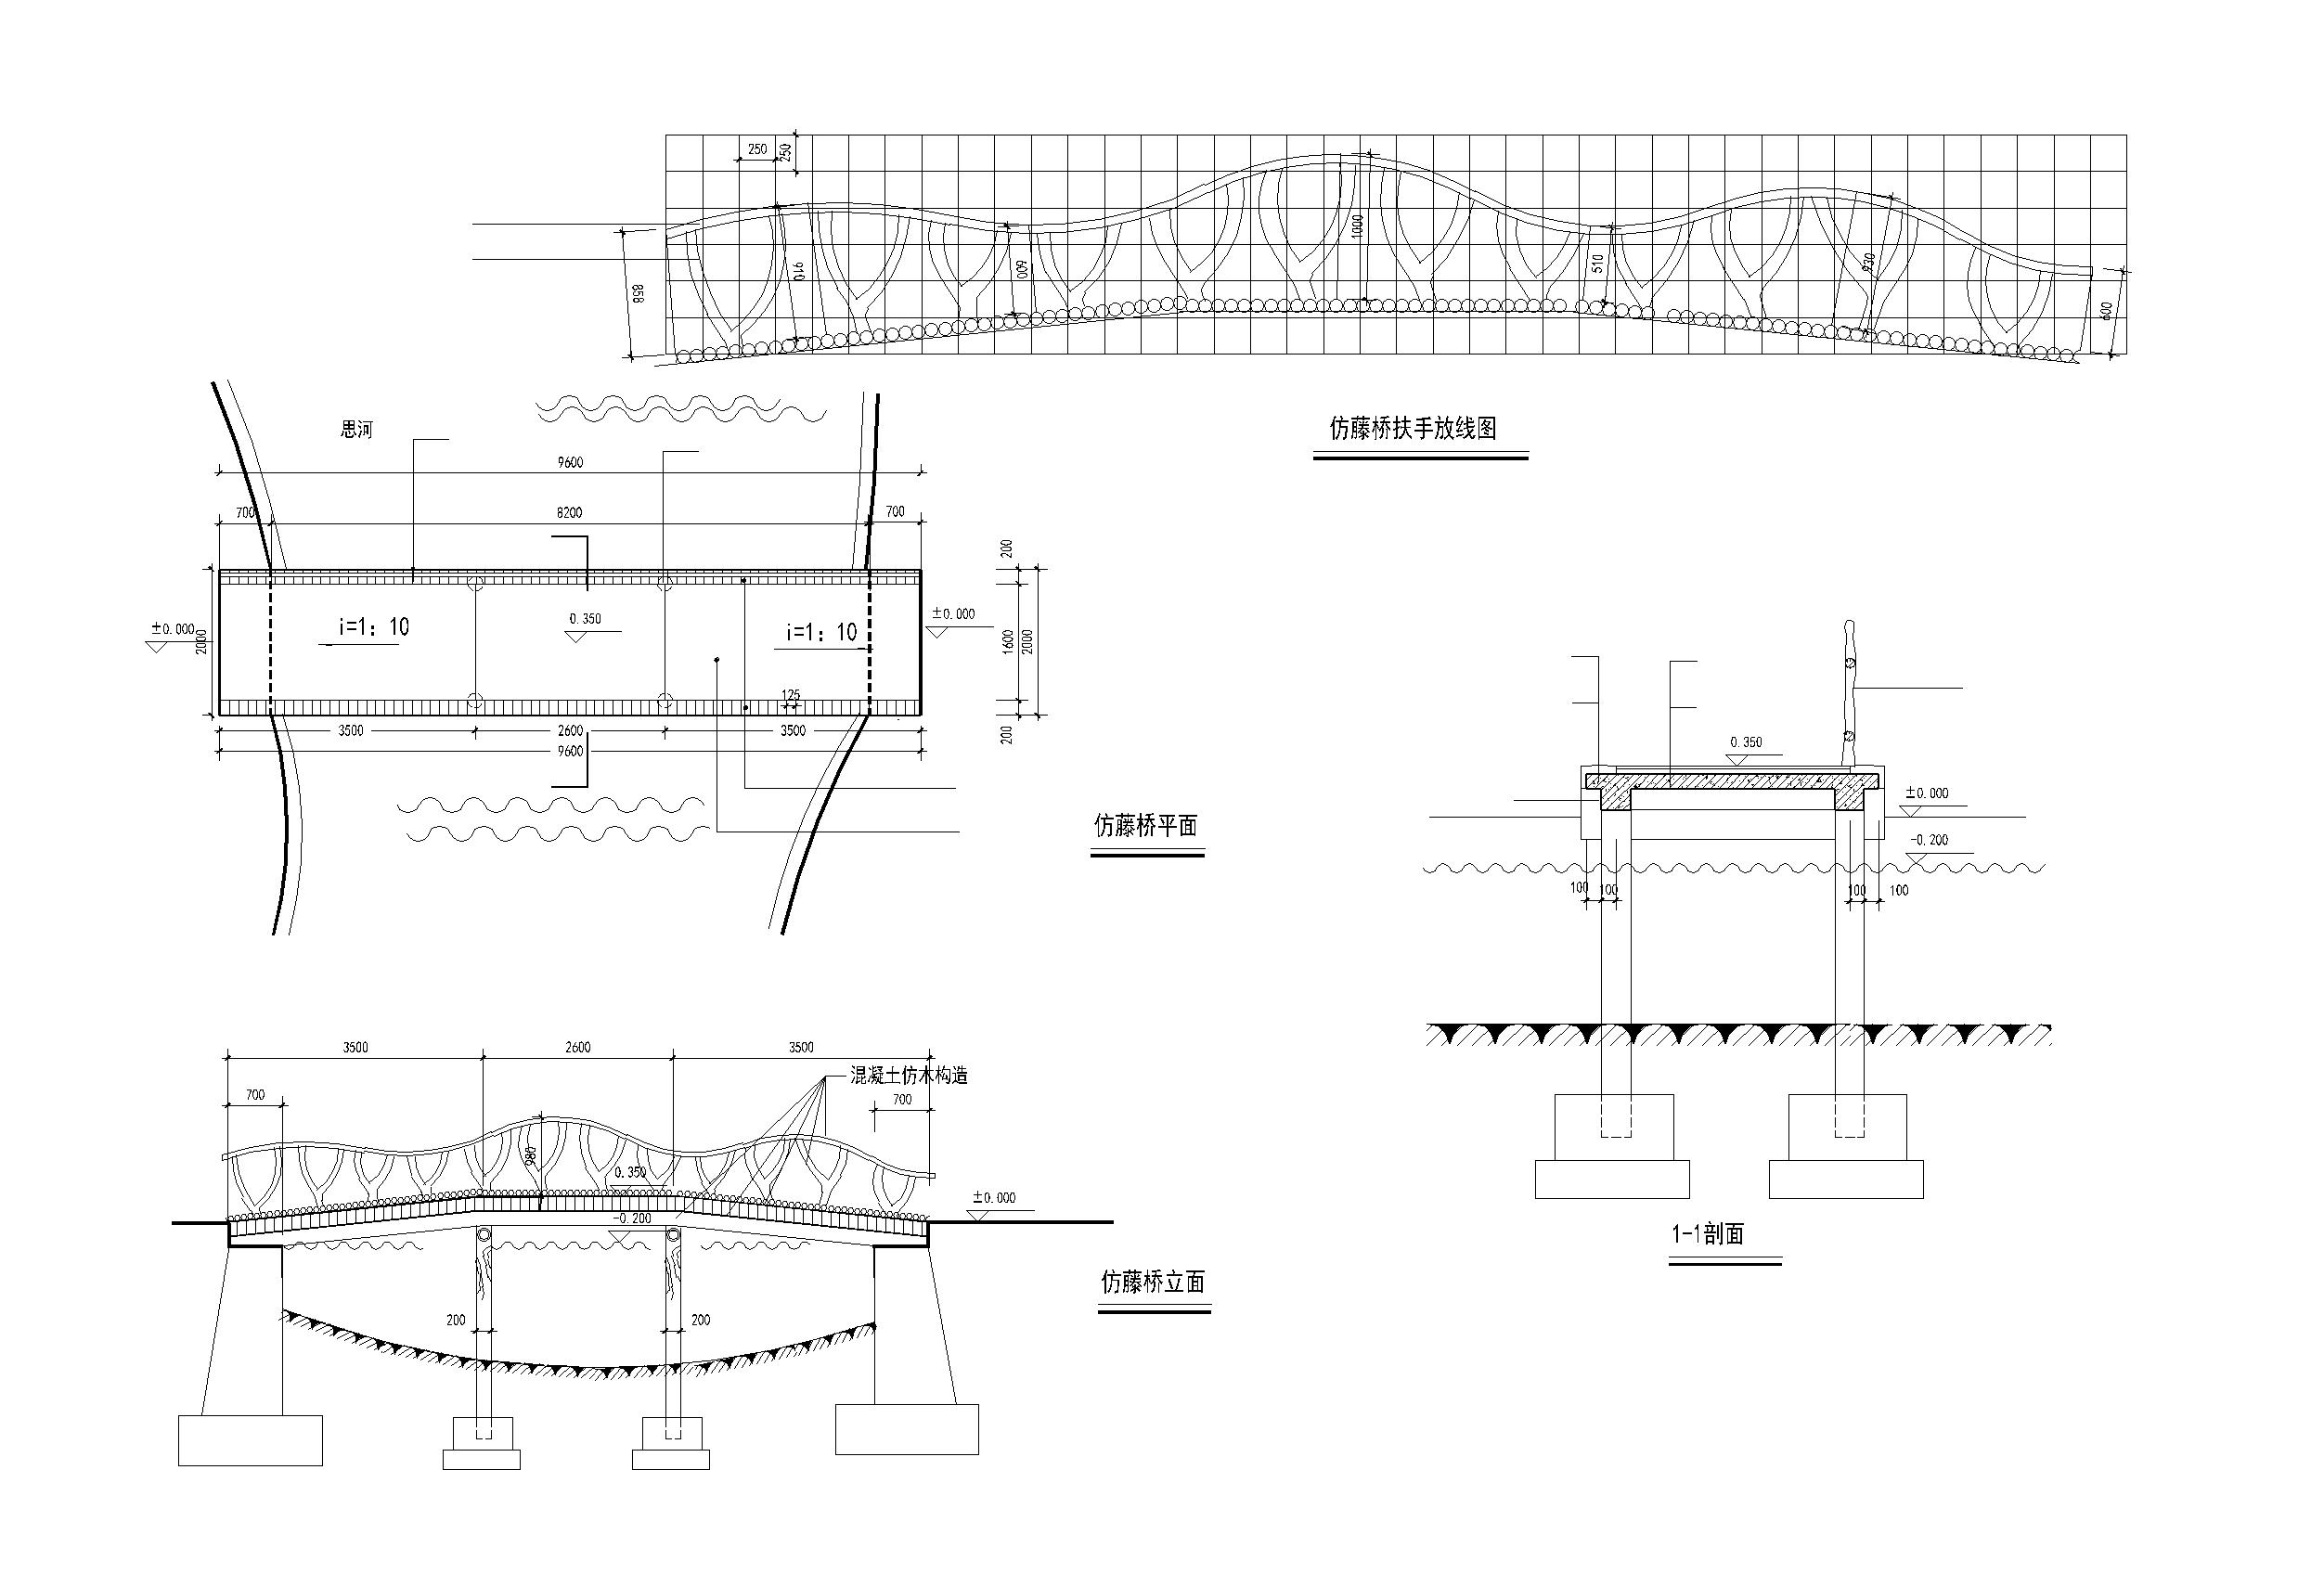 仿藤扶手 桥 仿藤做法 平立剖 节点 及 结构 全套施工图 钢混 结构 详细节点做法